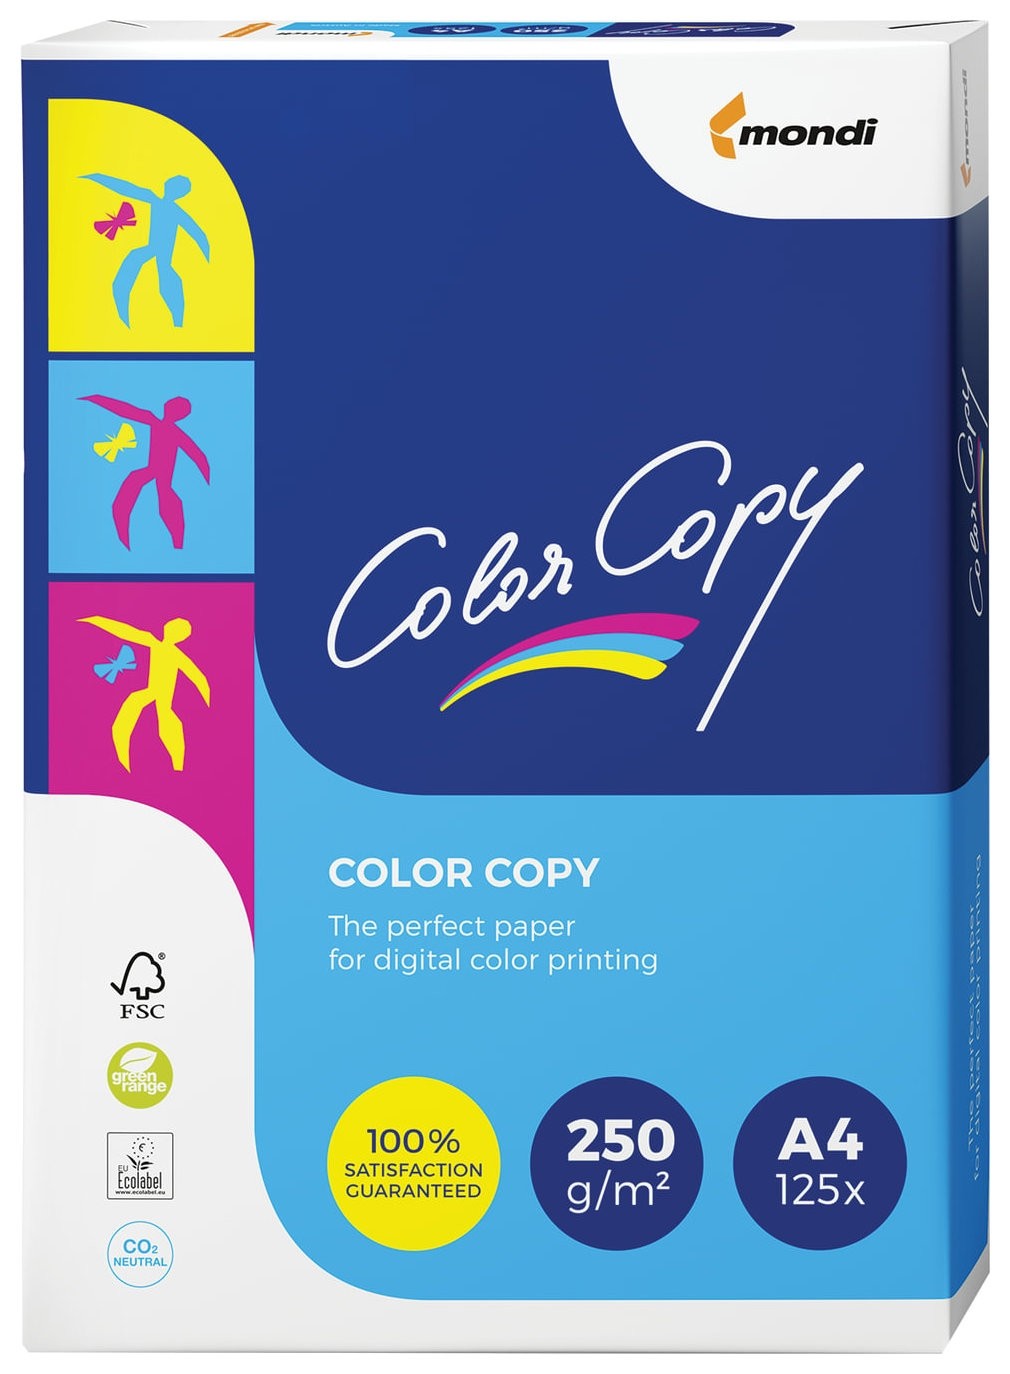 Бумага COLOR COPY, А4, 250 г/м2, 125 листов, для полноцветной лазерной печати, А++, Австрия, 161% (CIE)